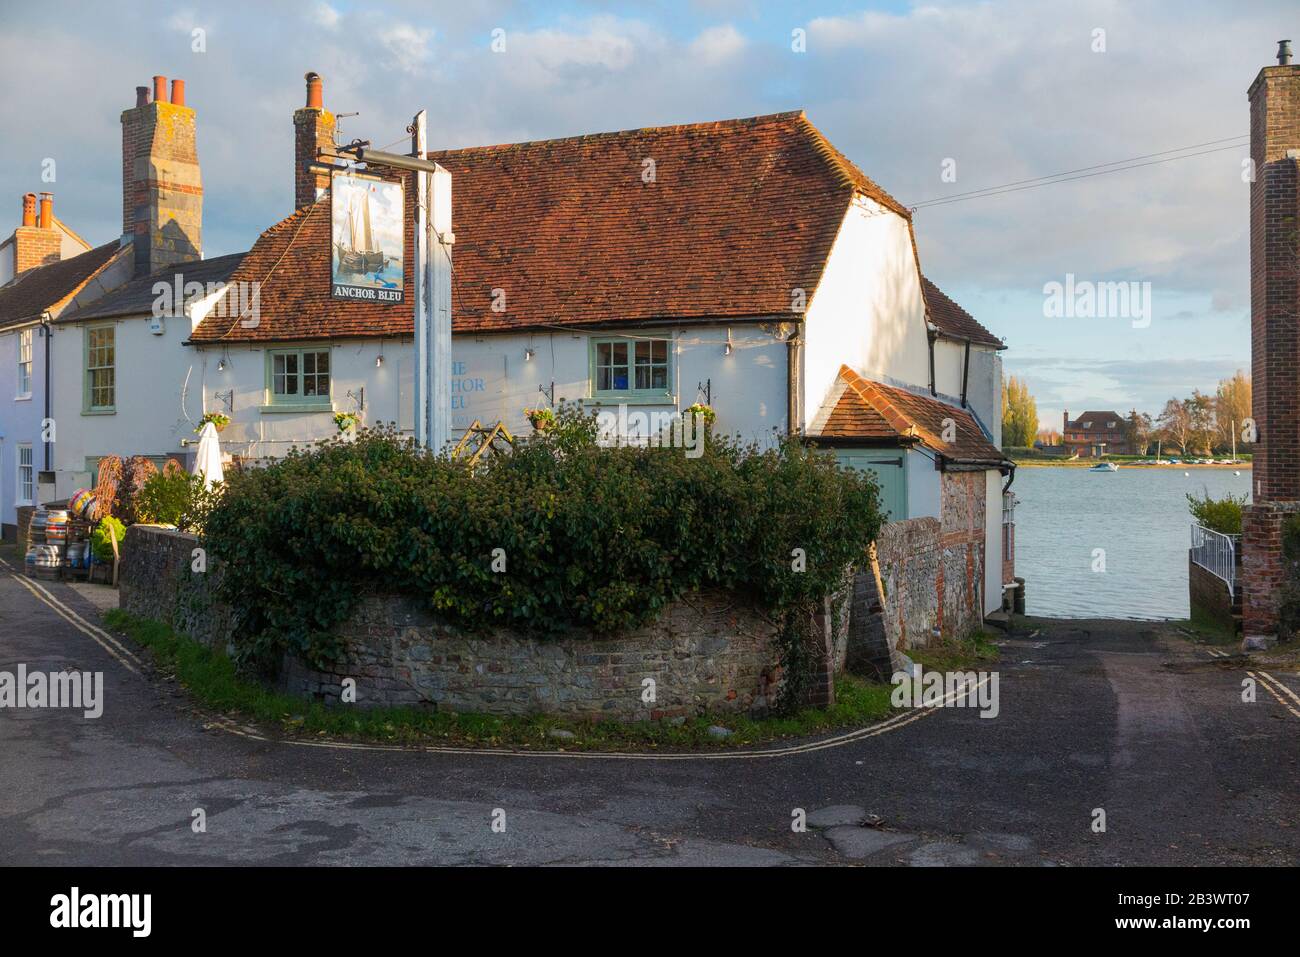 Visto dall'esterno, l'Anchor Bleu – Inglese; il Blue Anchor – pub / casa pubblica con cartello sulla High Street, Bosham, Chichester PO18 8LS. Sussex occidentale. REGNO UNITO (114) Foto Stock